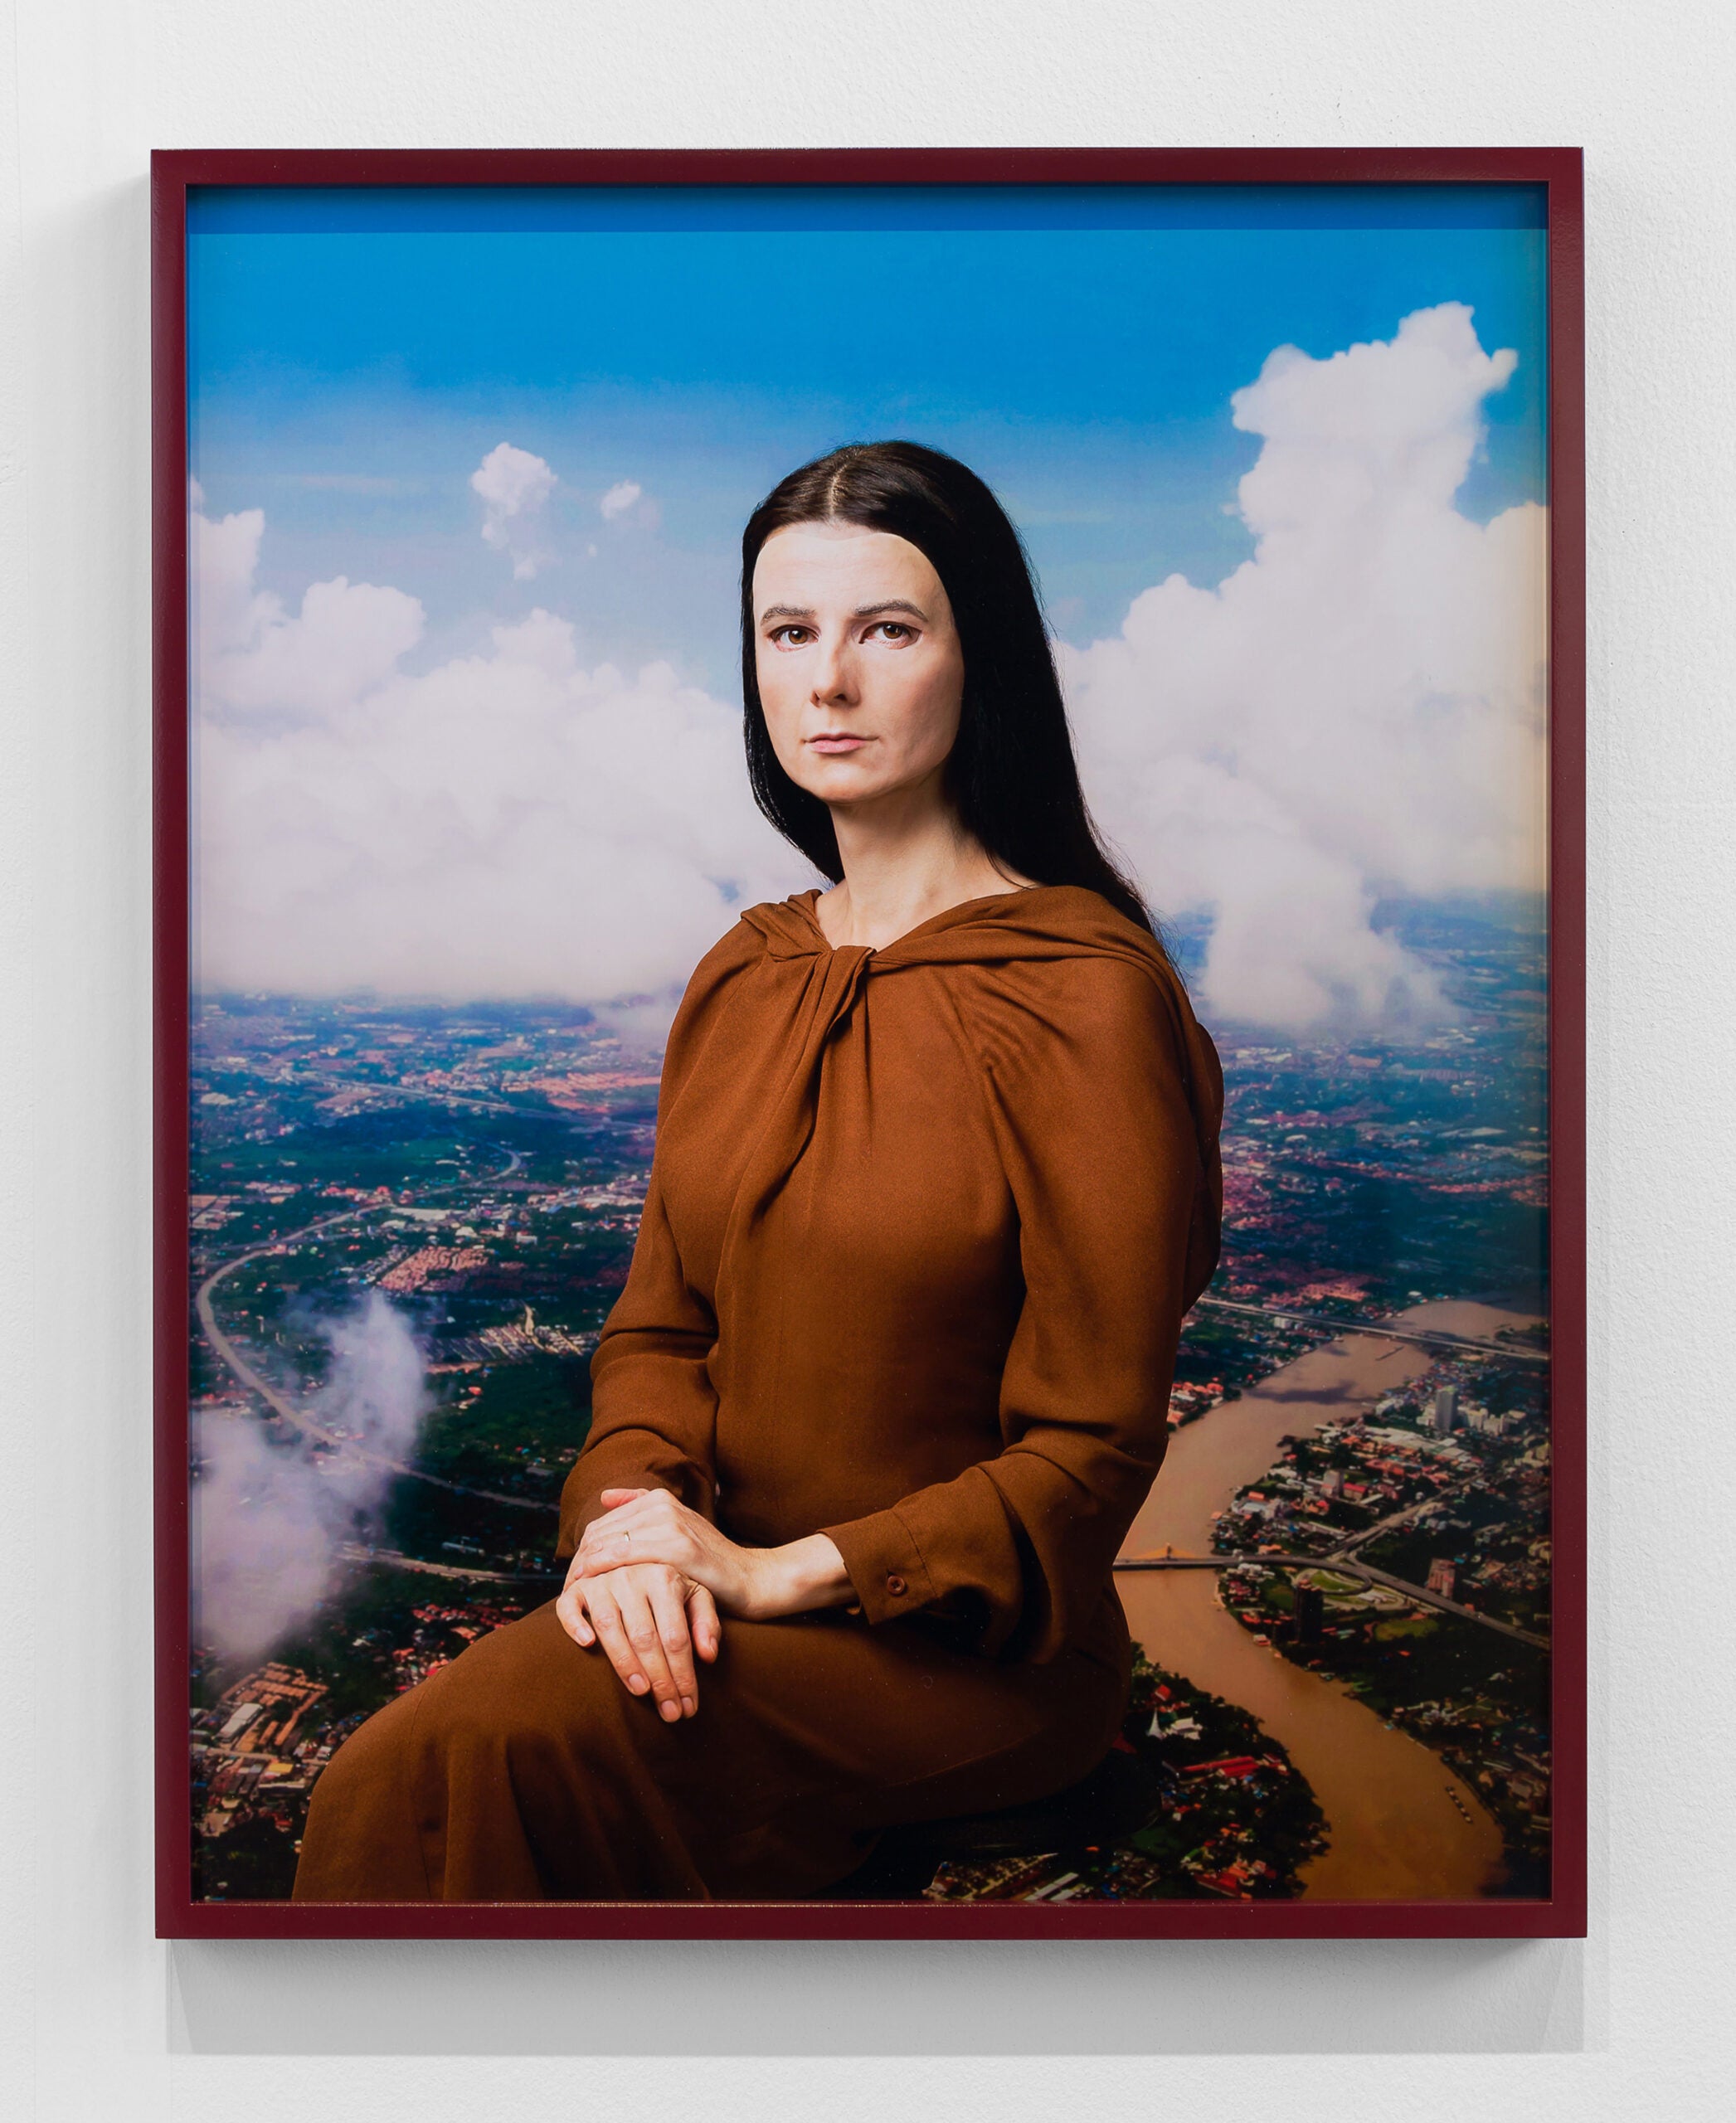  âMe as Mona Lisa,â by Gillian Wearing, 2020. Framed chromogenic print, 24 1/4 x 19 1/8 x 1 1/4 in. (61.6 x 48.6 x 3.2 cm). 